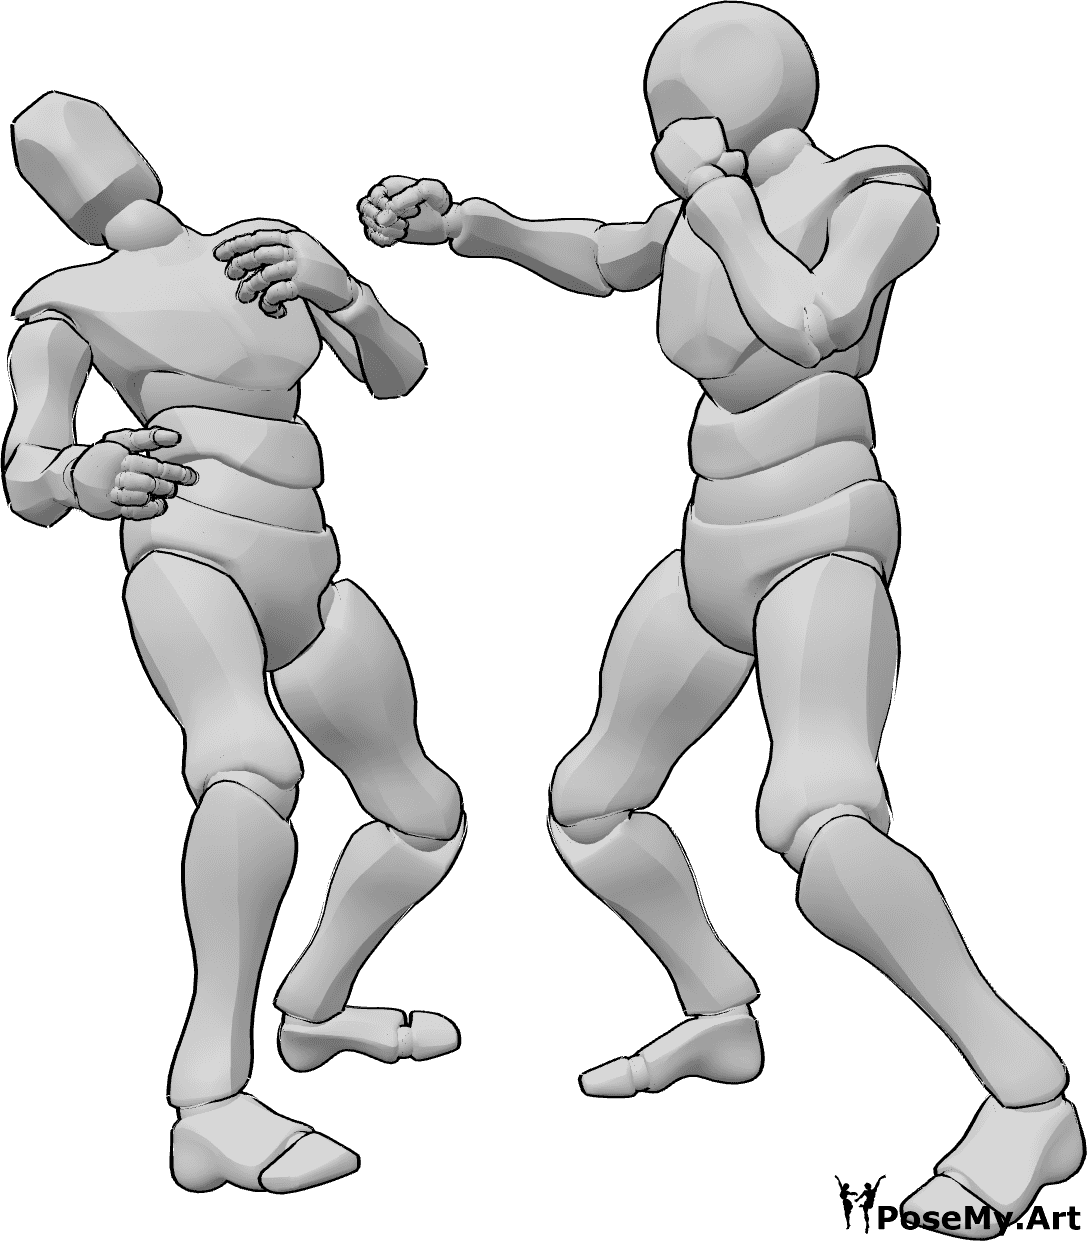 Referência de poses- Pose de nocaute da caixa - Dois homens estão a lutar boxe, um deles derruba o seu adversário com um gancho de direita